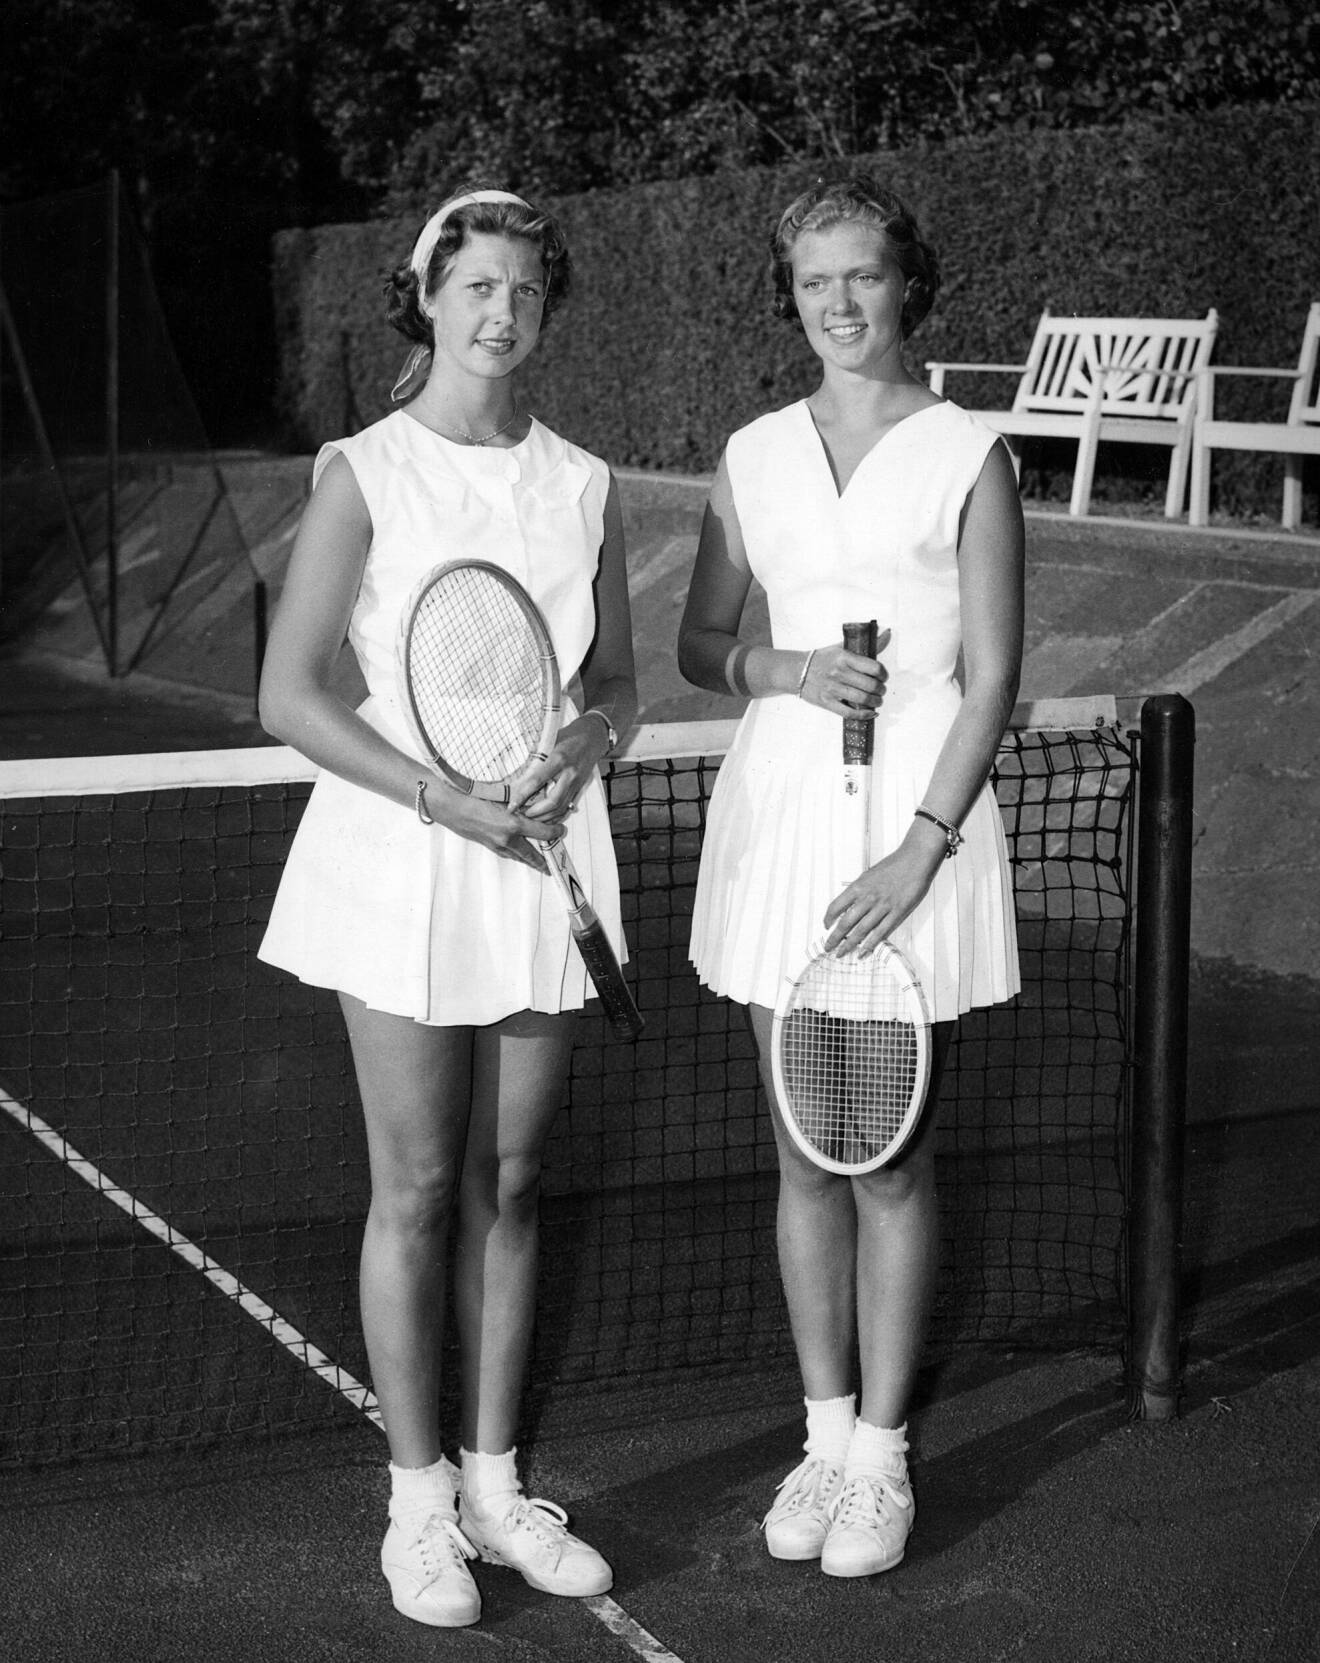 Prinsessorna Désirée (t.v.) och Birgitta spelade tennis på kungliga semestertillflykten Solliden år 1956.